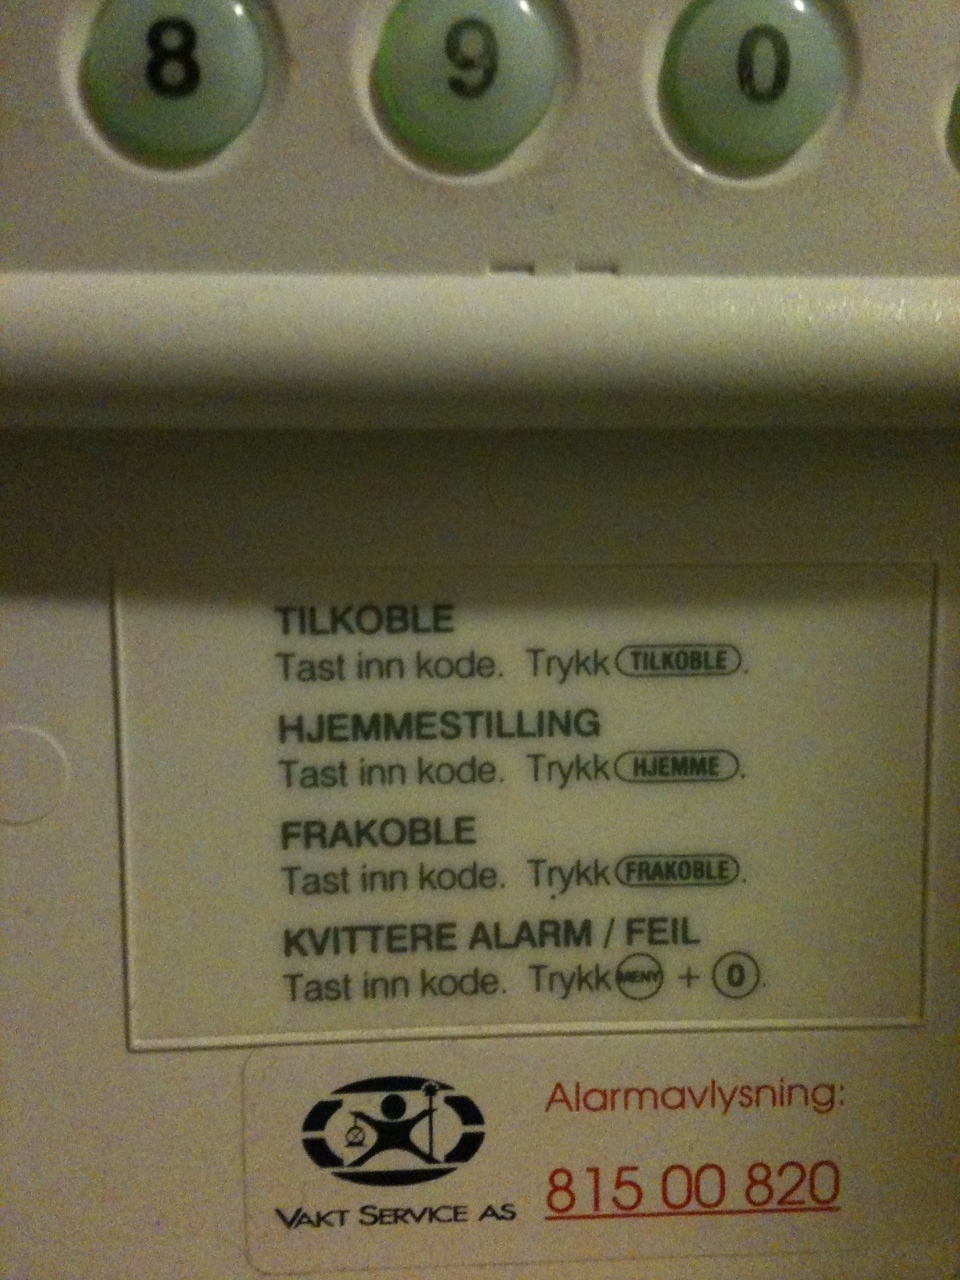 Brukermanual: Vaktservice alarmpanel (1998 model?) - alarmpanel.jpg - davidoff